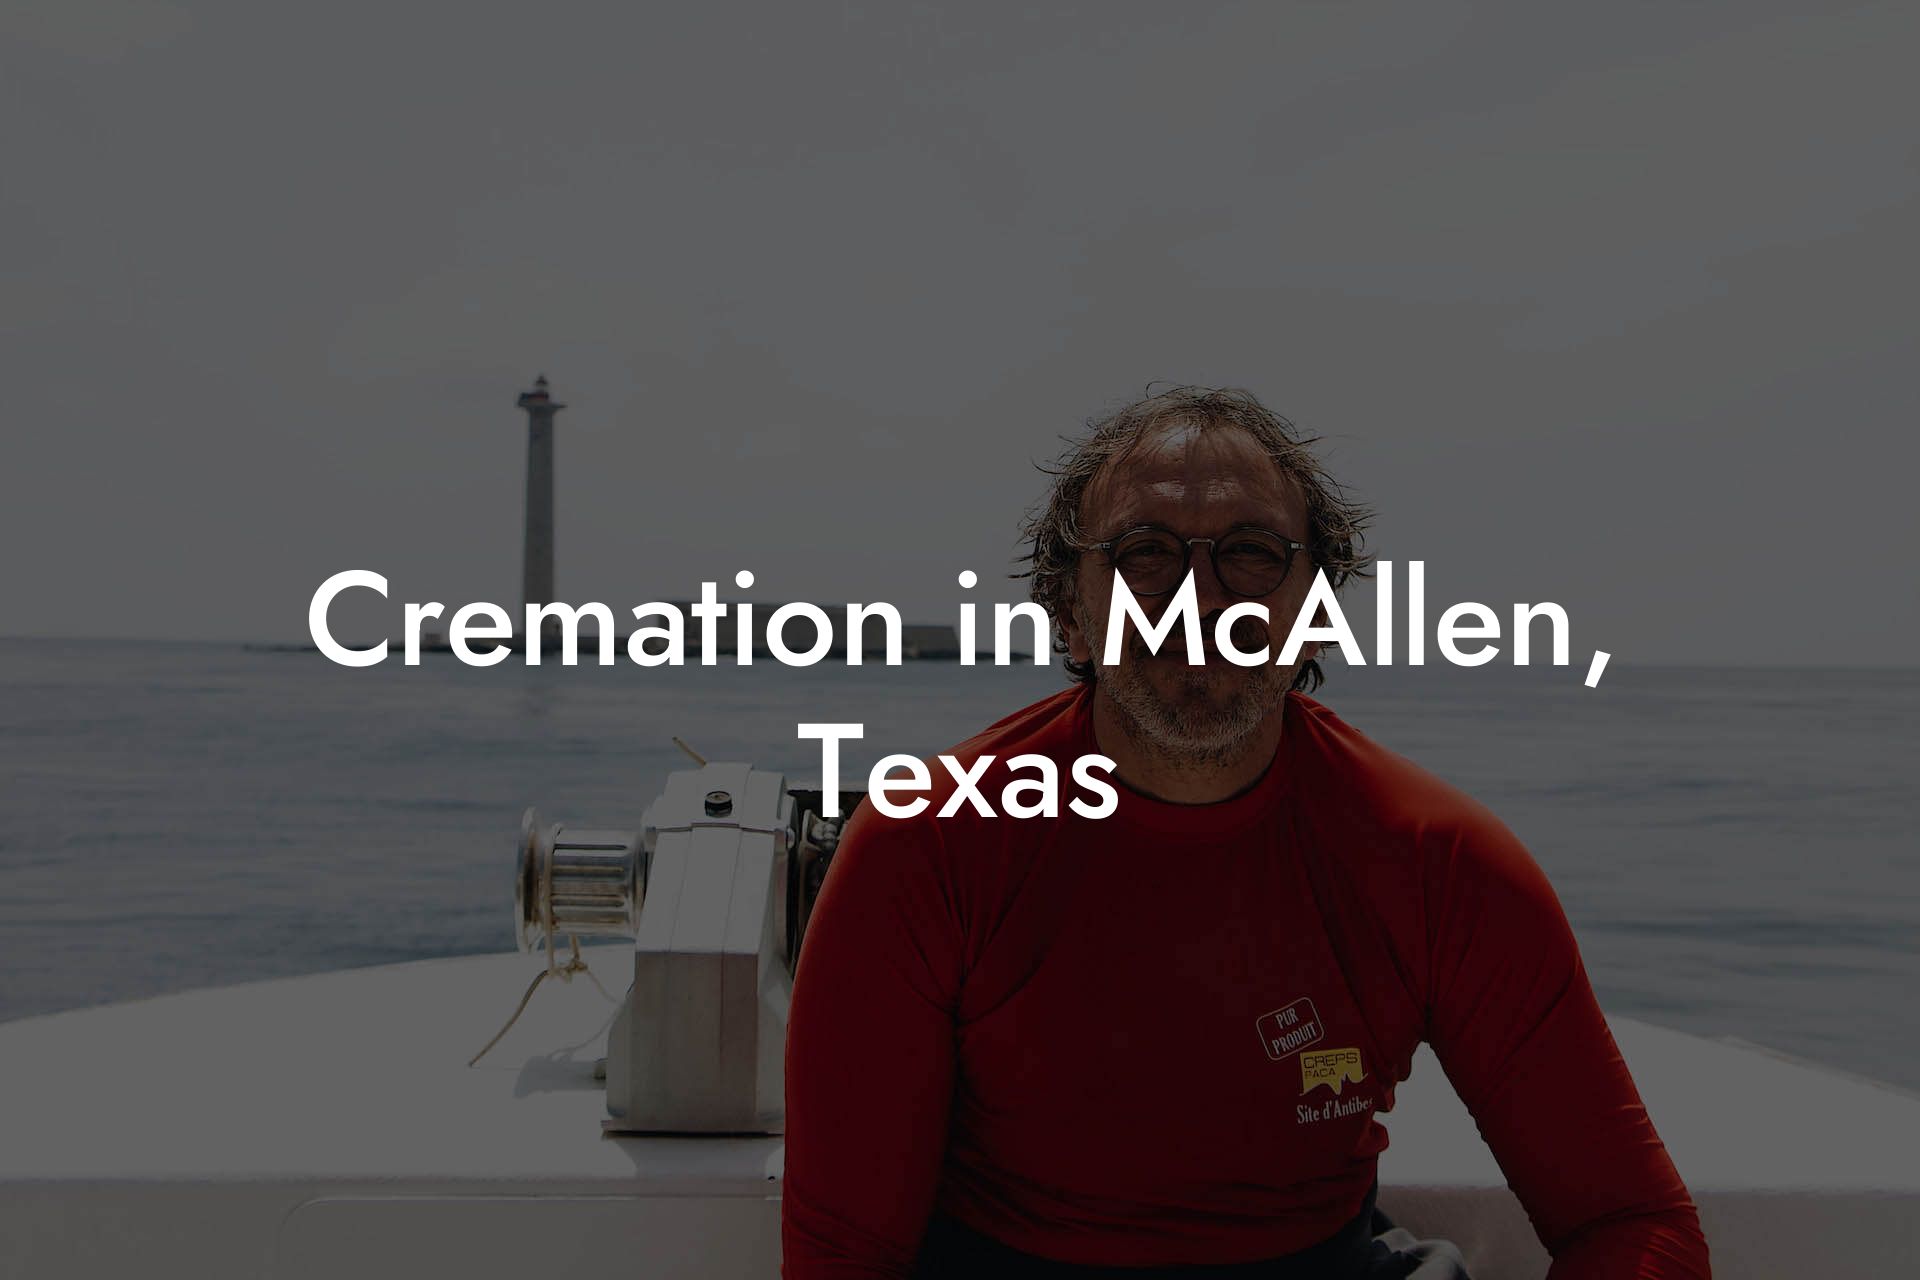 Cremation in McAllen, Texas